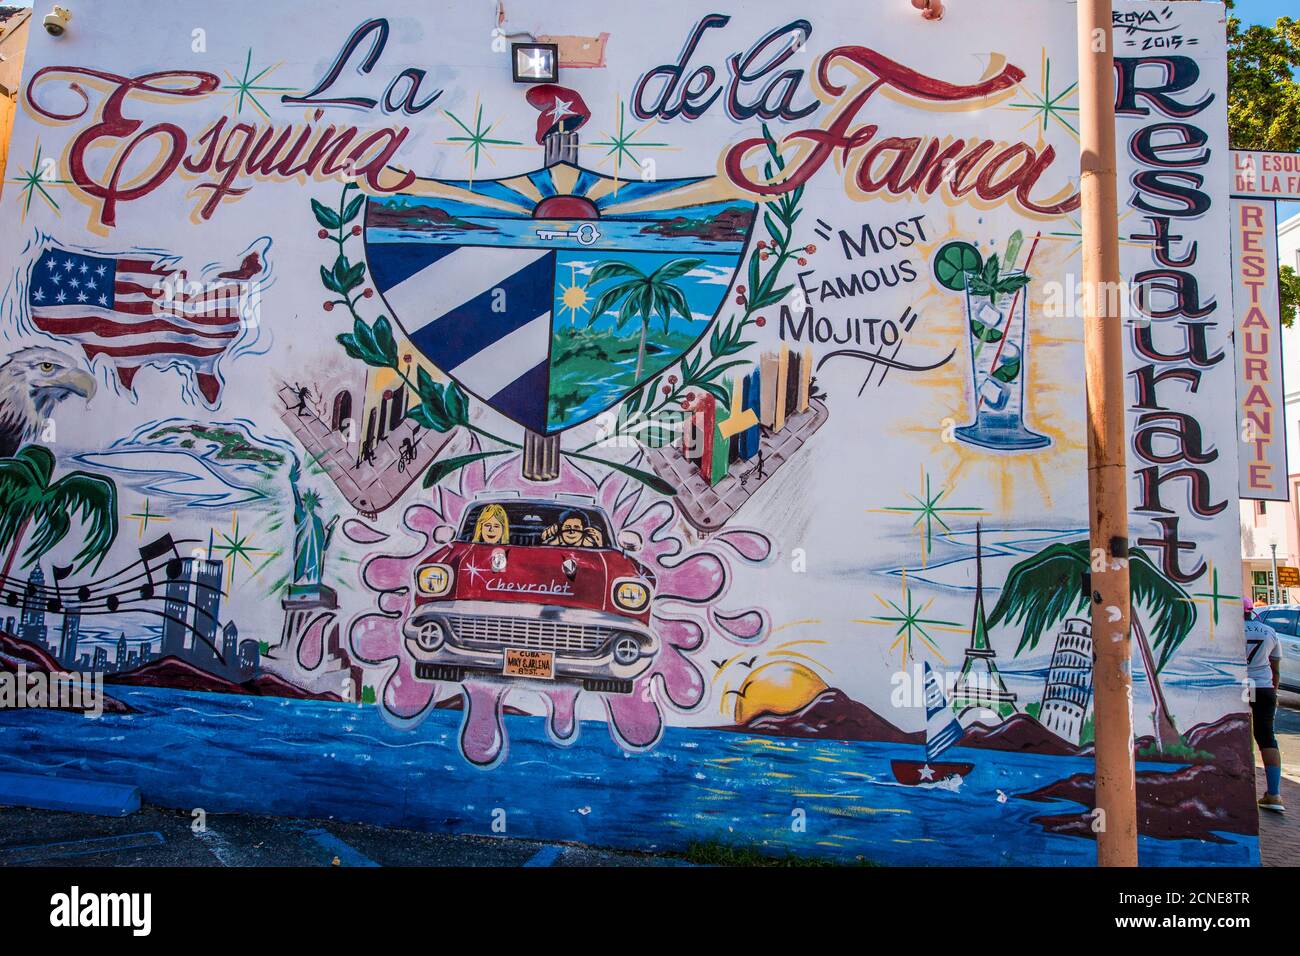 Peintures murales, Little Havana, quartier cubain de Miami, Miami, Floride, États-Unis d'Amérique Banque D'Images